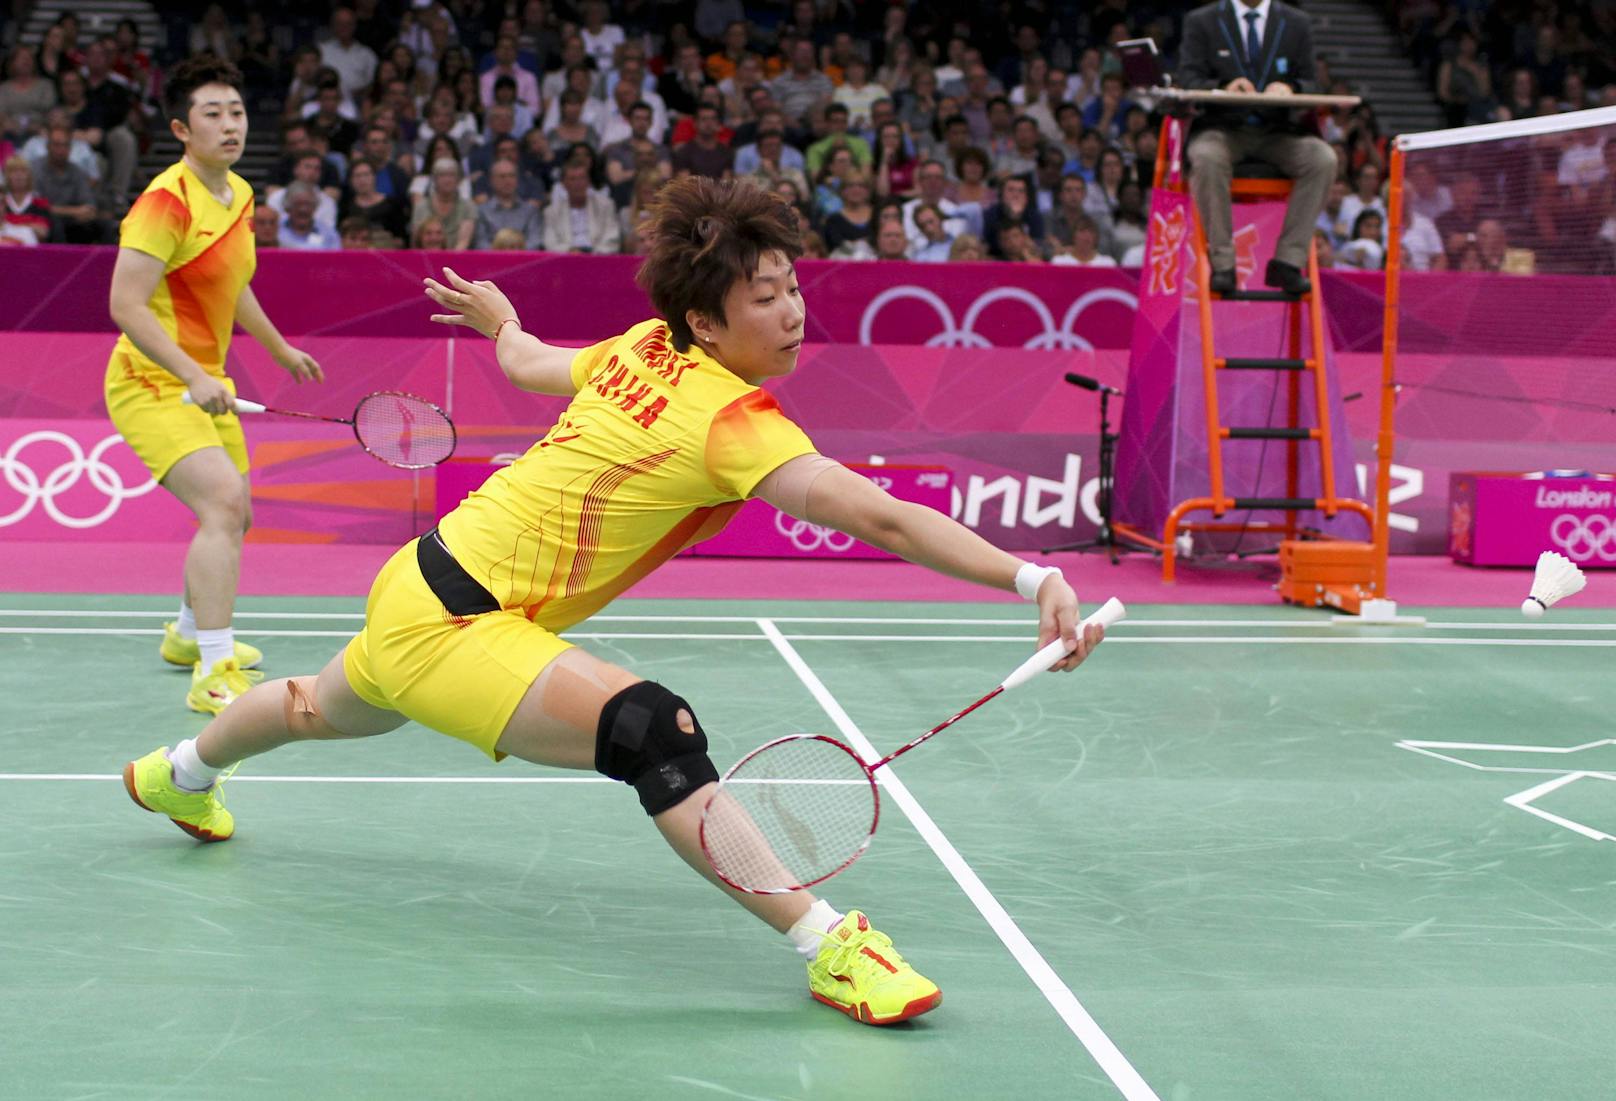 Wang Xiaoli und Yu Yang wurden bei den Olympischen Spielen 2012 in London disqualifiziert, weil sie ihr letztes Gruppenspiel absichtlich verloren hatten, um in der K.o-Phase einem stärkeren Gegner aus dem Weg zu gehen. Letztere erklärte daraufhin ihren Rücktritt. Yu Yang hatte 2008 in Peking Gold erobert.